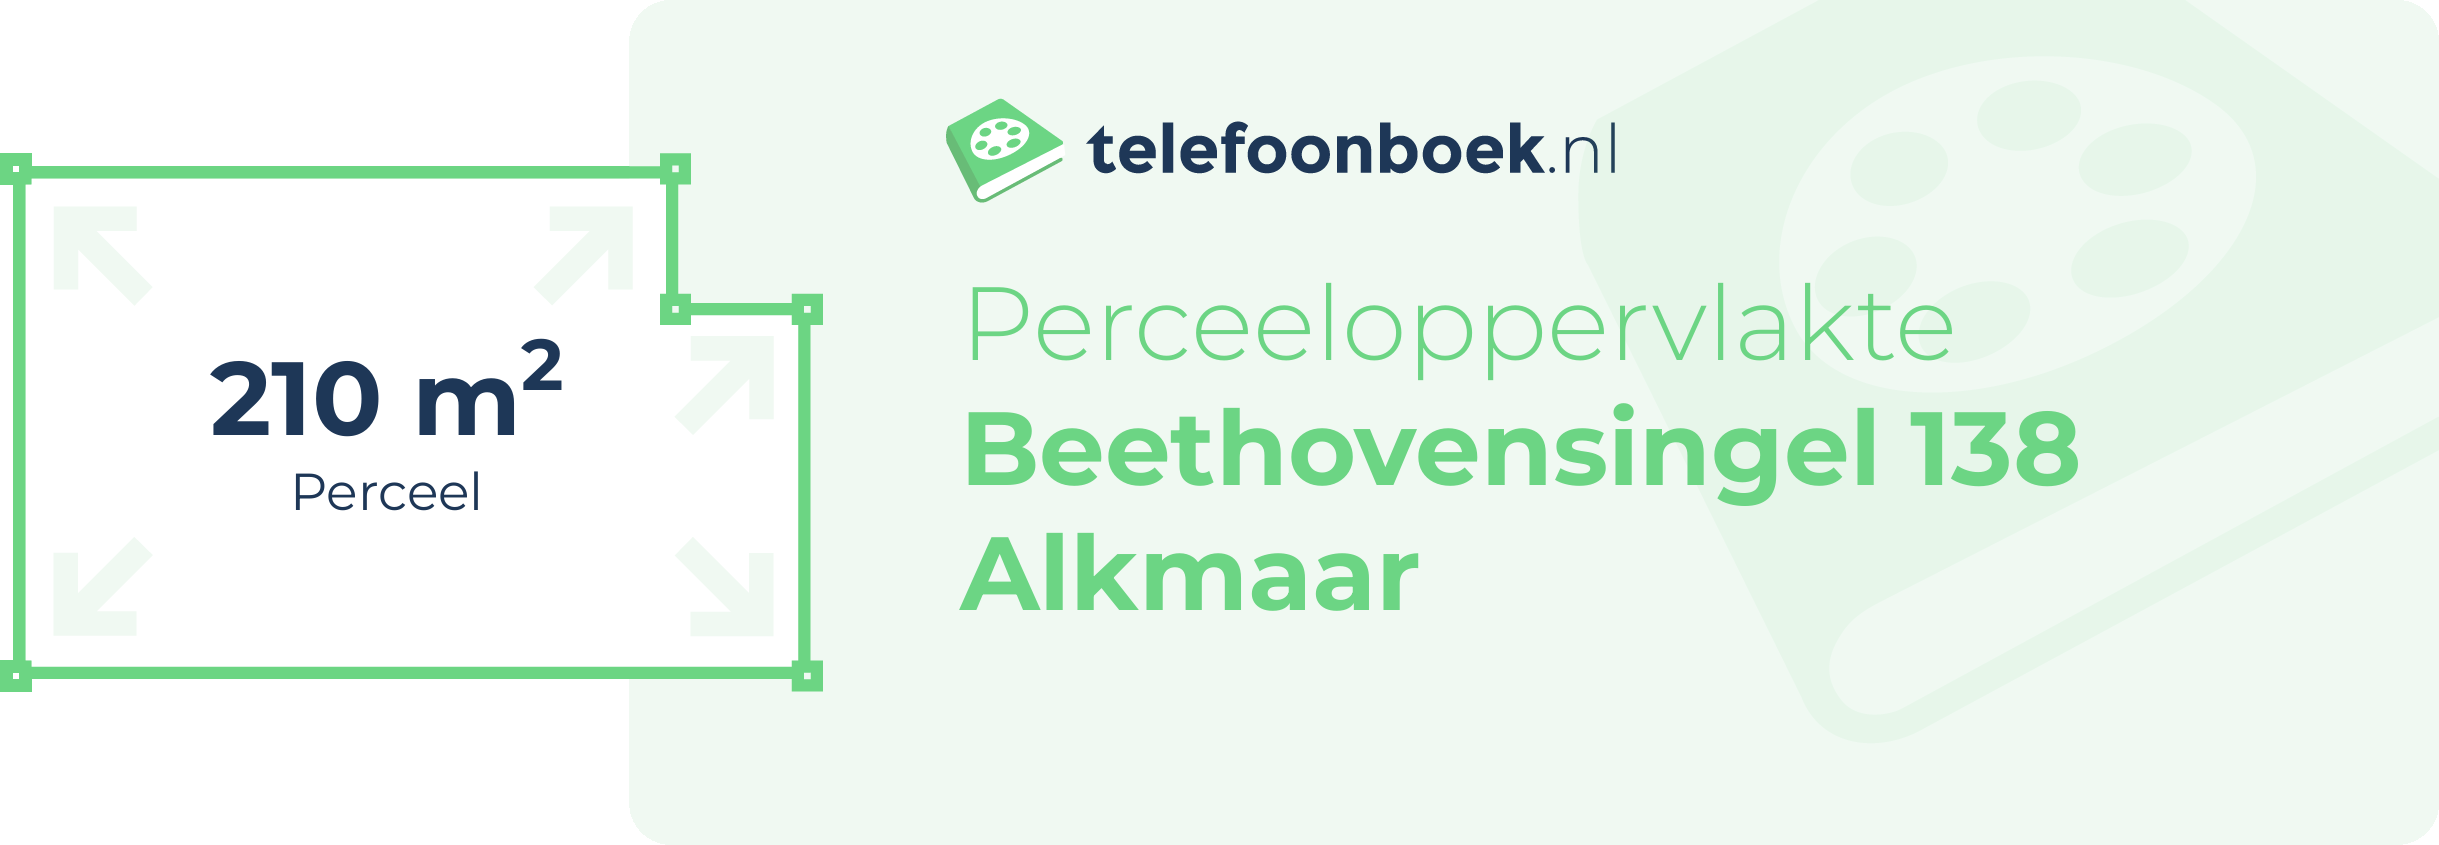 Perceeloppervlakte Beethovensingel 138 Alkmaar